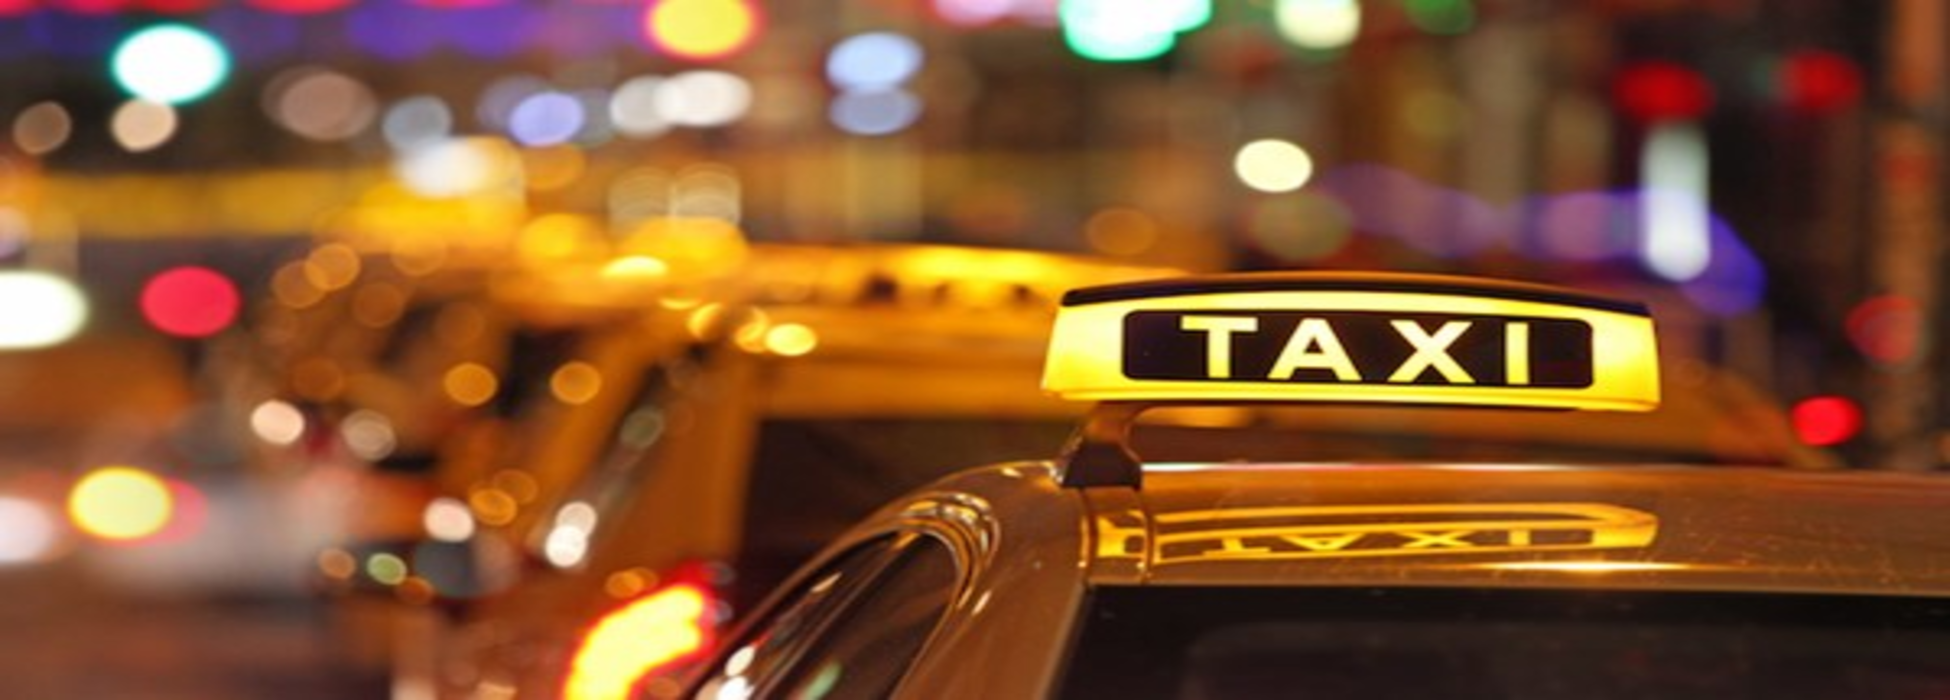 Cách Đặt Taxi Grab Khi Không Có Ứng Dụng Grab